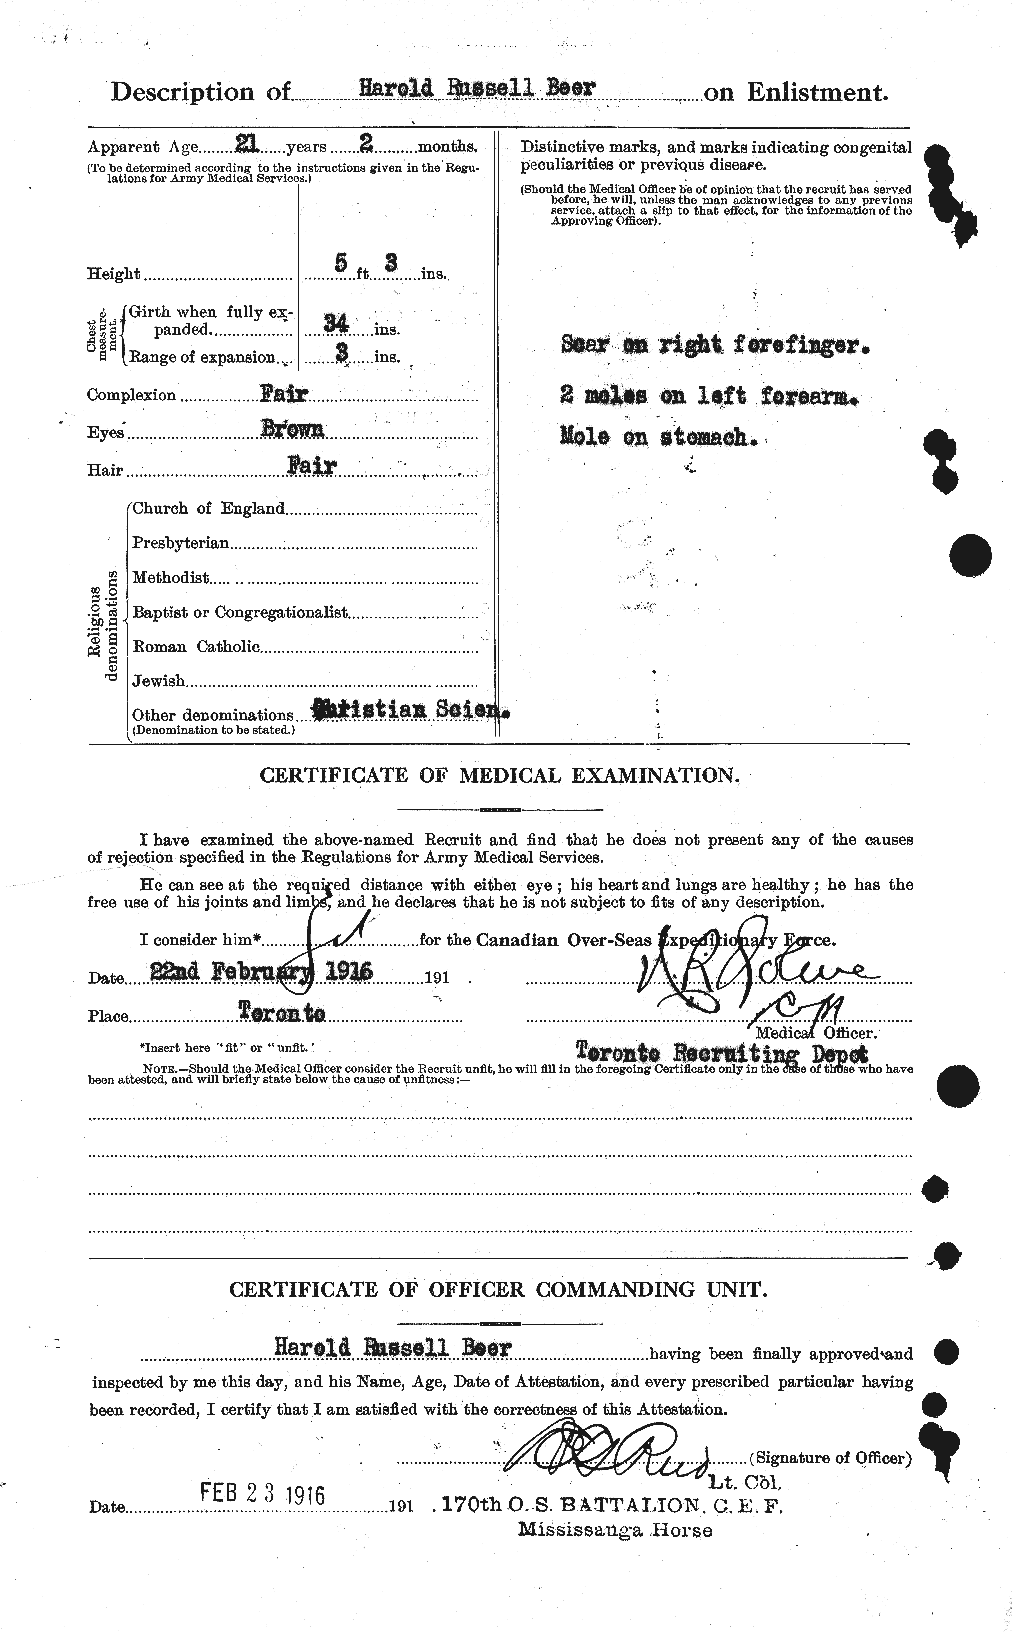 Dossiers du Personnel de la Première Guerre mondiale - CEC 241545b